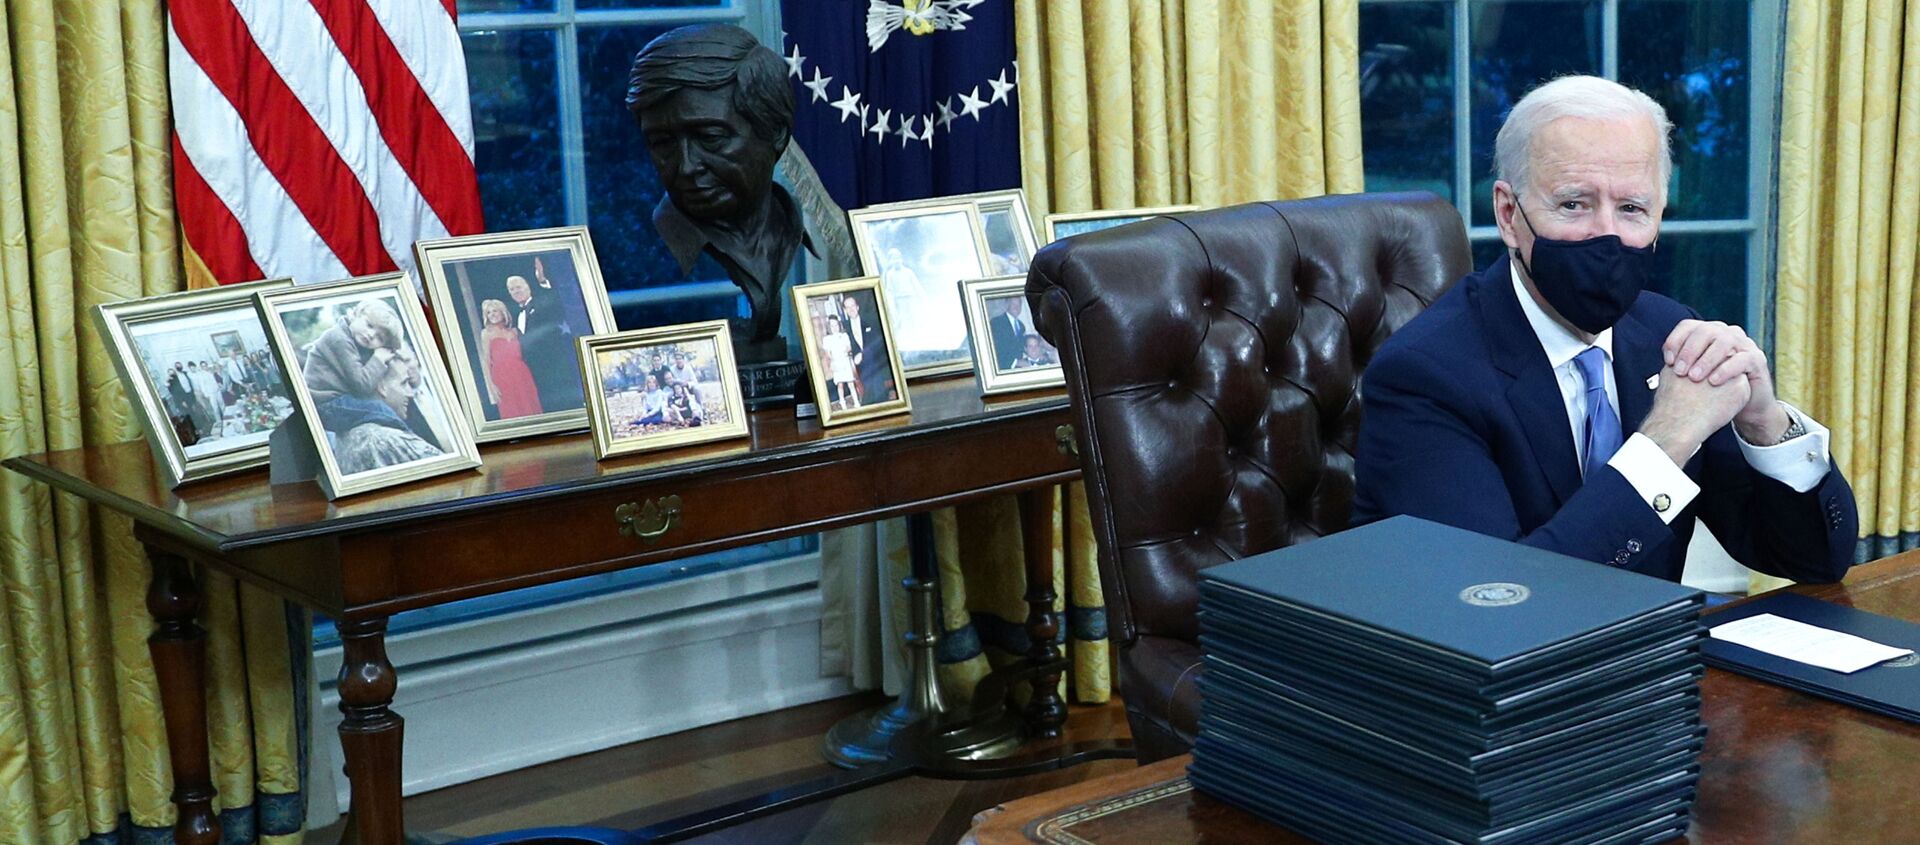 Президент США Джо Байден в Овальном кабинете в Белом доме, 2021 год  - Sputnik Армения, 1920, 11.02.2021